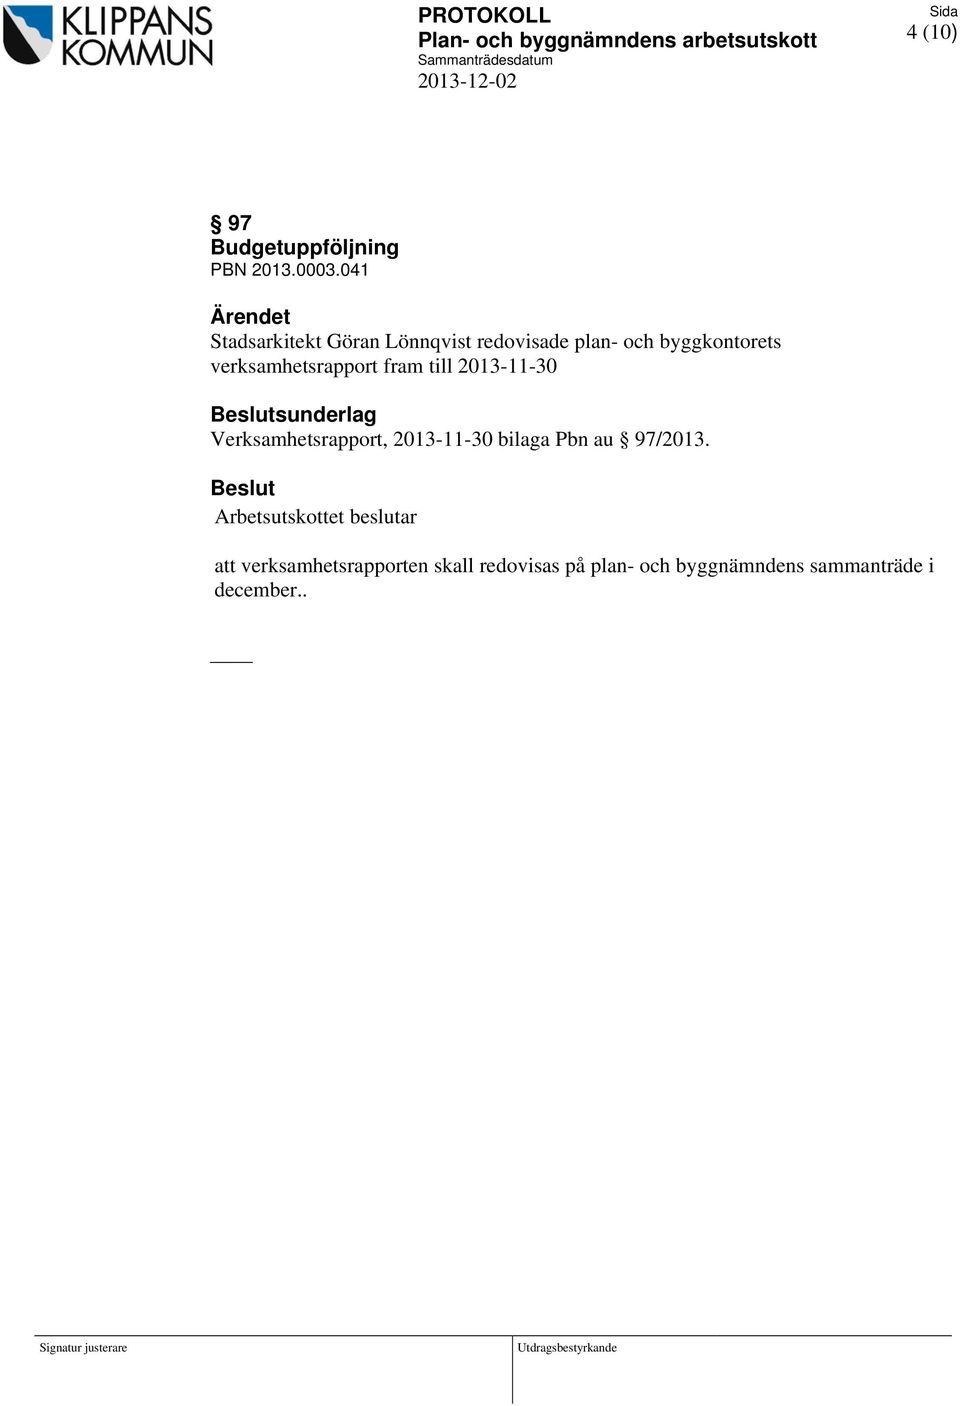 verksamhetsrapport fram till 2013-11-30 sunderlag Verksamhetsrapport, 2013-11-30